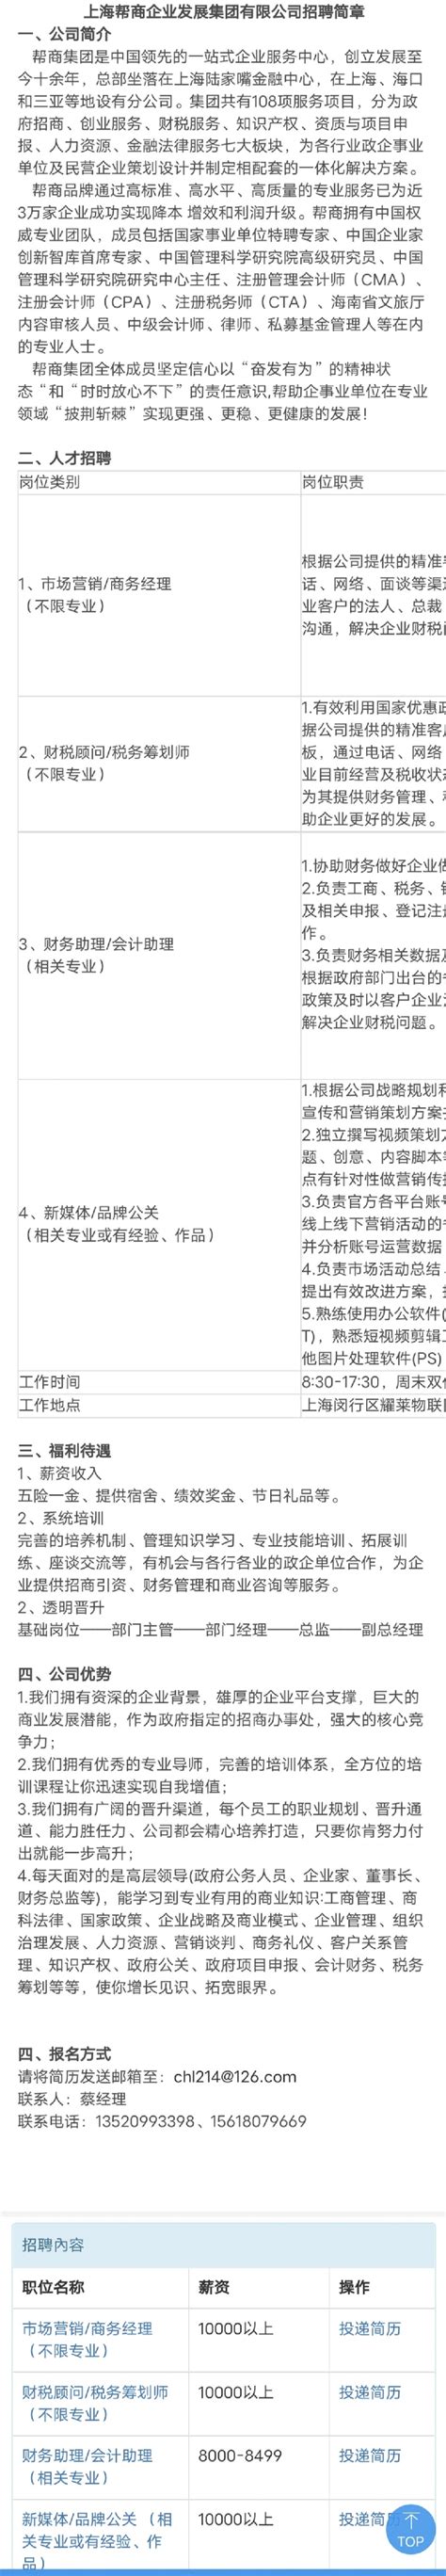 上海联影医疗科技股份有限公司招聘简章